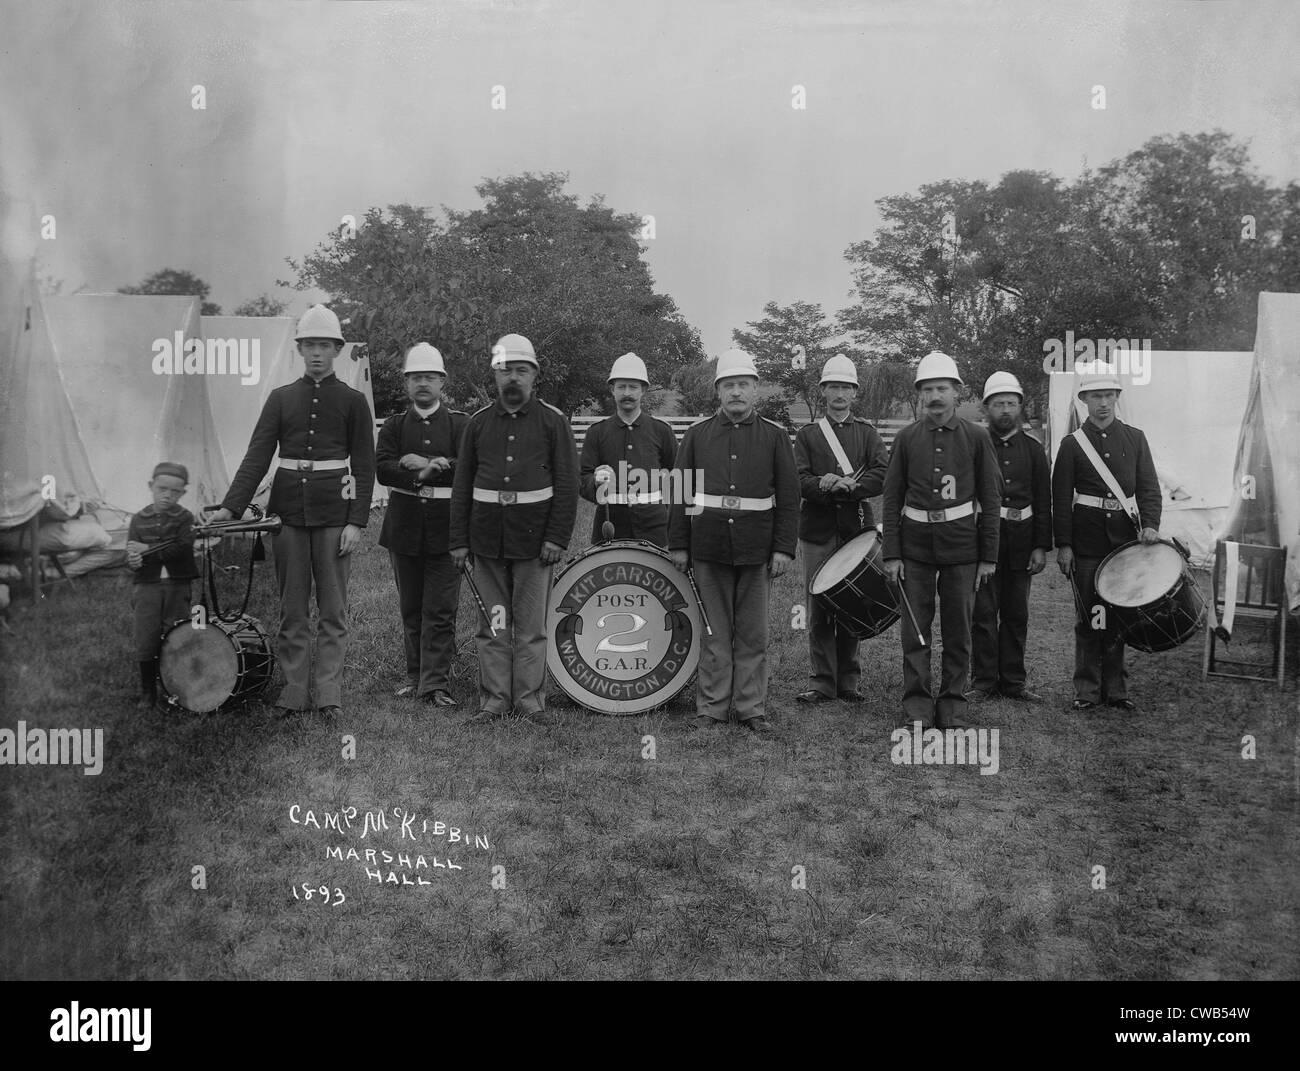 Kit Carson Band, Camp McKibbin, Fotografie, 1893. Stockfoto